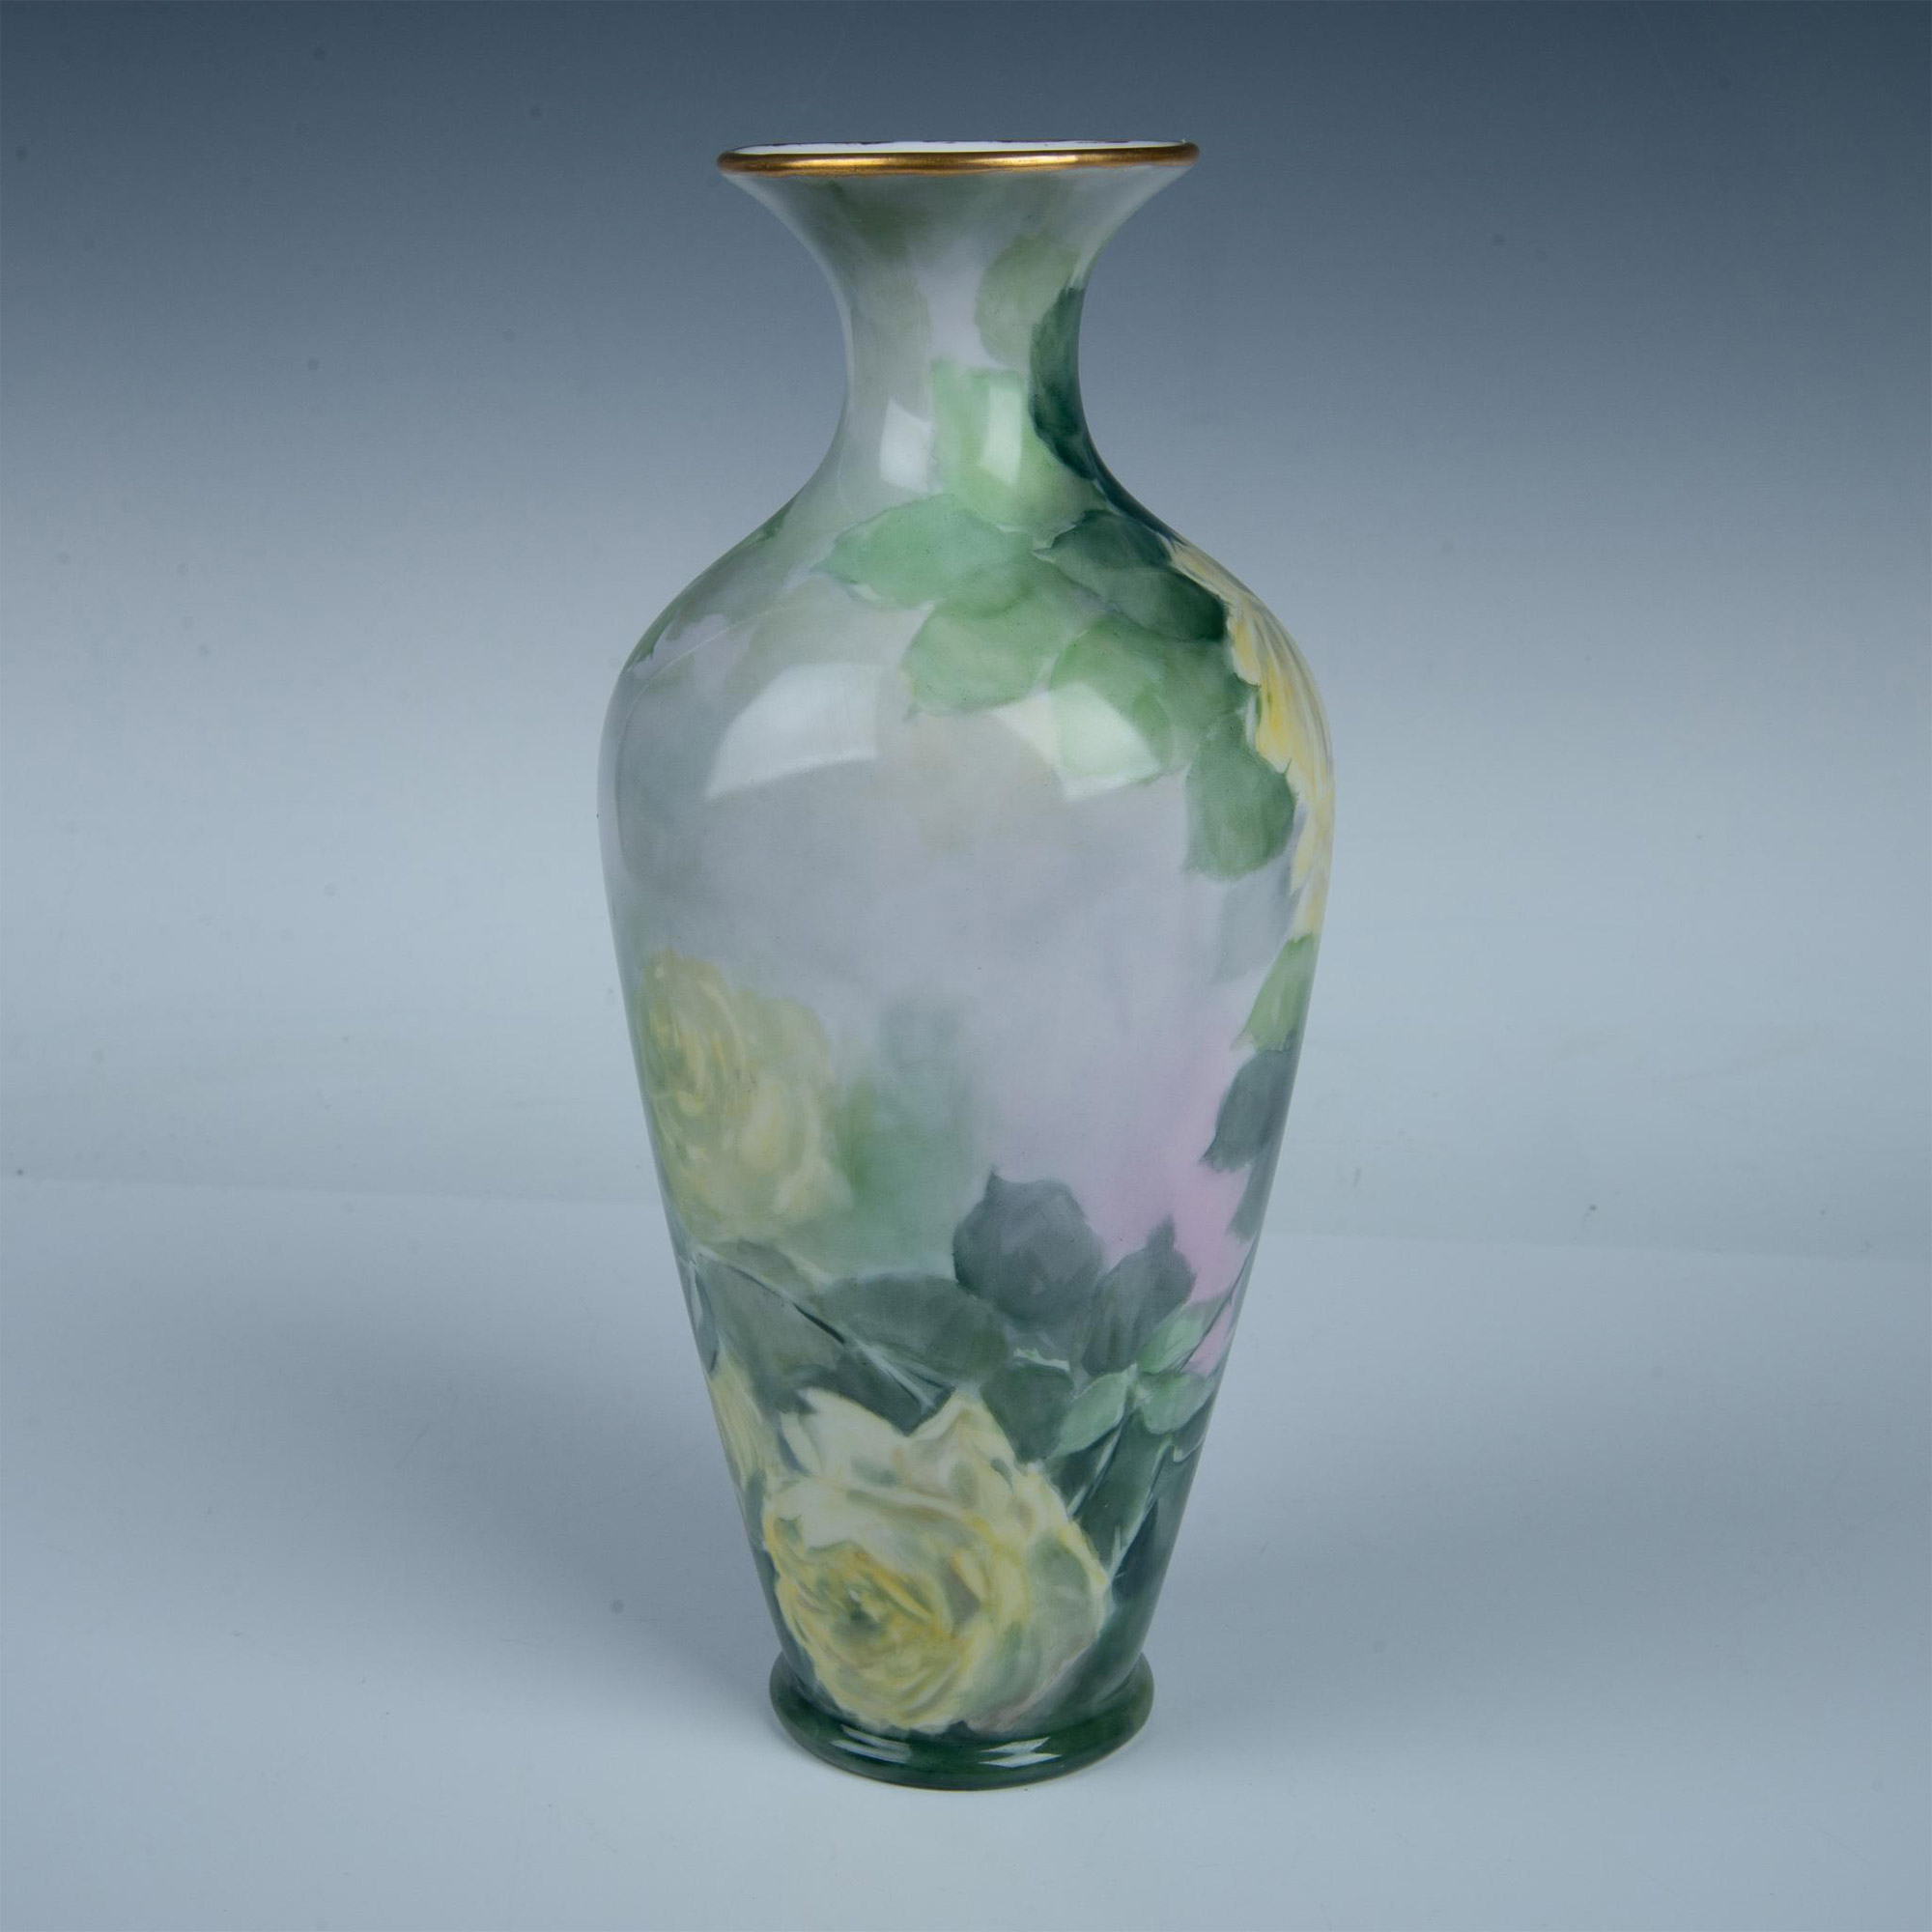 Tressemanes & Vogt by E.H. George Limoges Porcelain Vase - Image 2 of 5